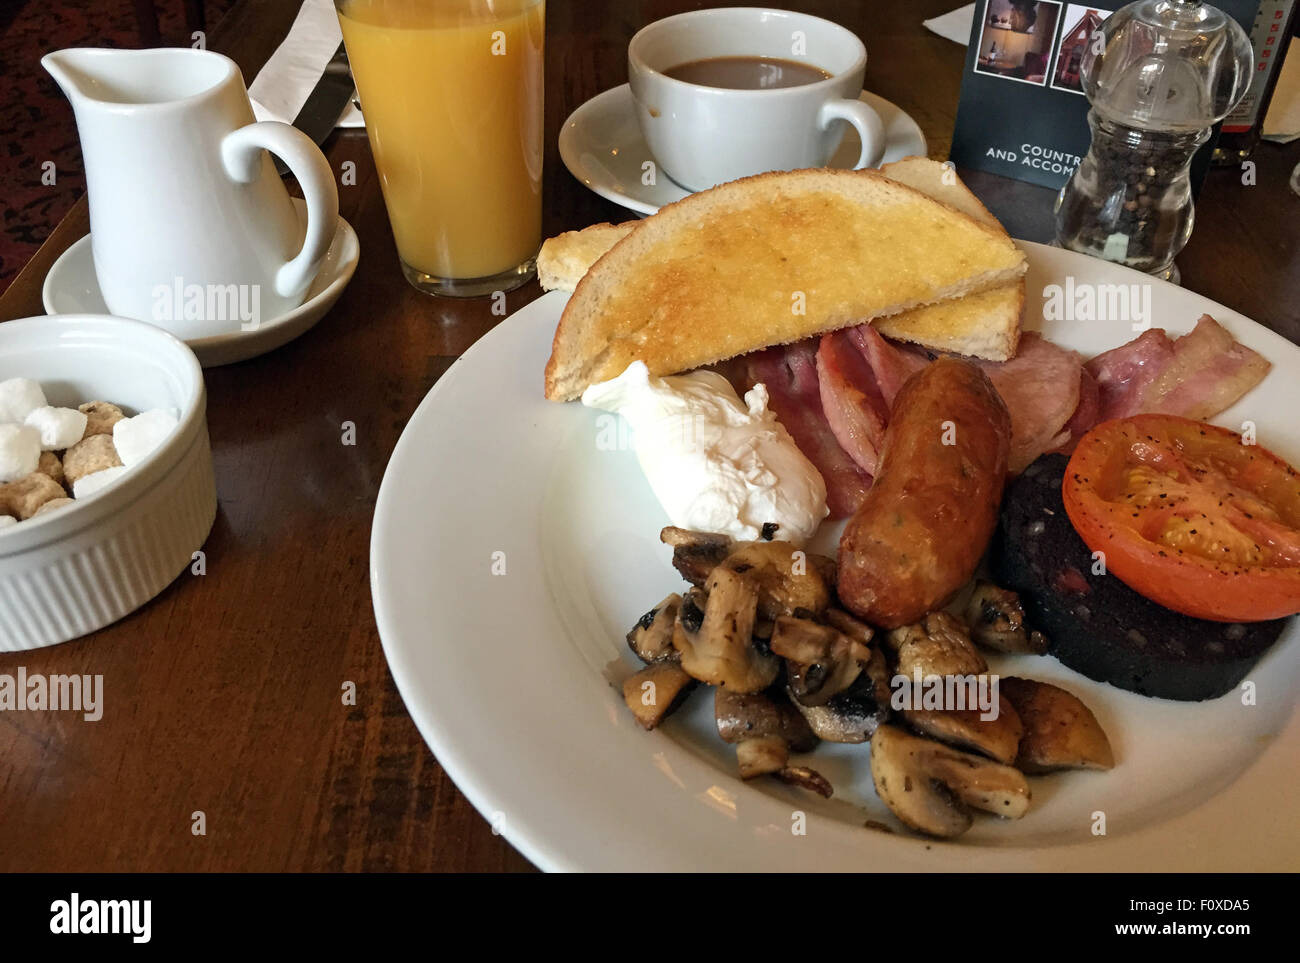 Traditionelles komplettes englisches Frühstück, Eier, Wurst, Speck, Black Pudding, Toast, Pilz aus einem fettigen Löffel Cafe - britisches warmes Frühstück Stockfoto